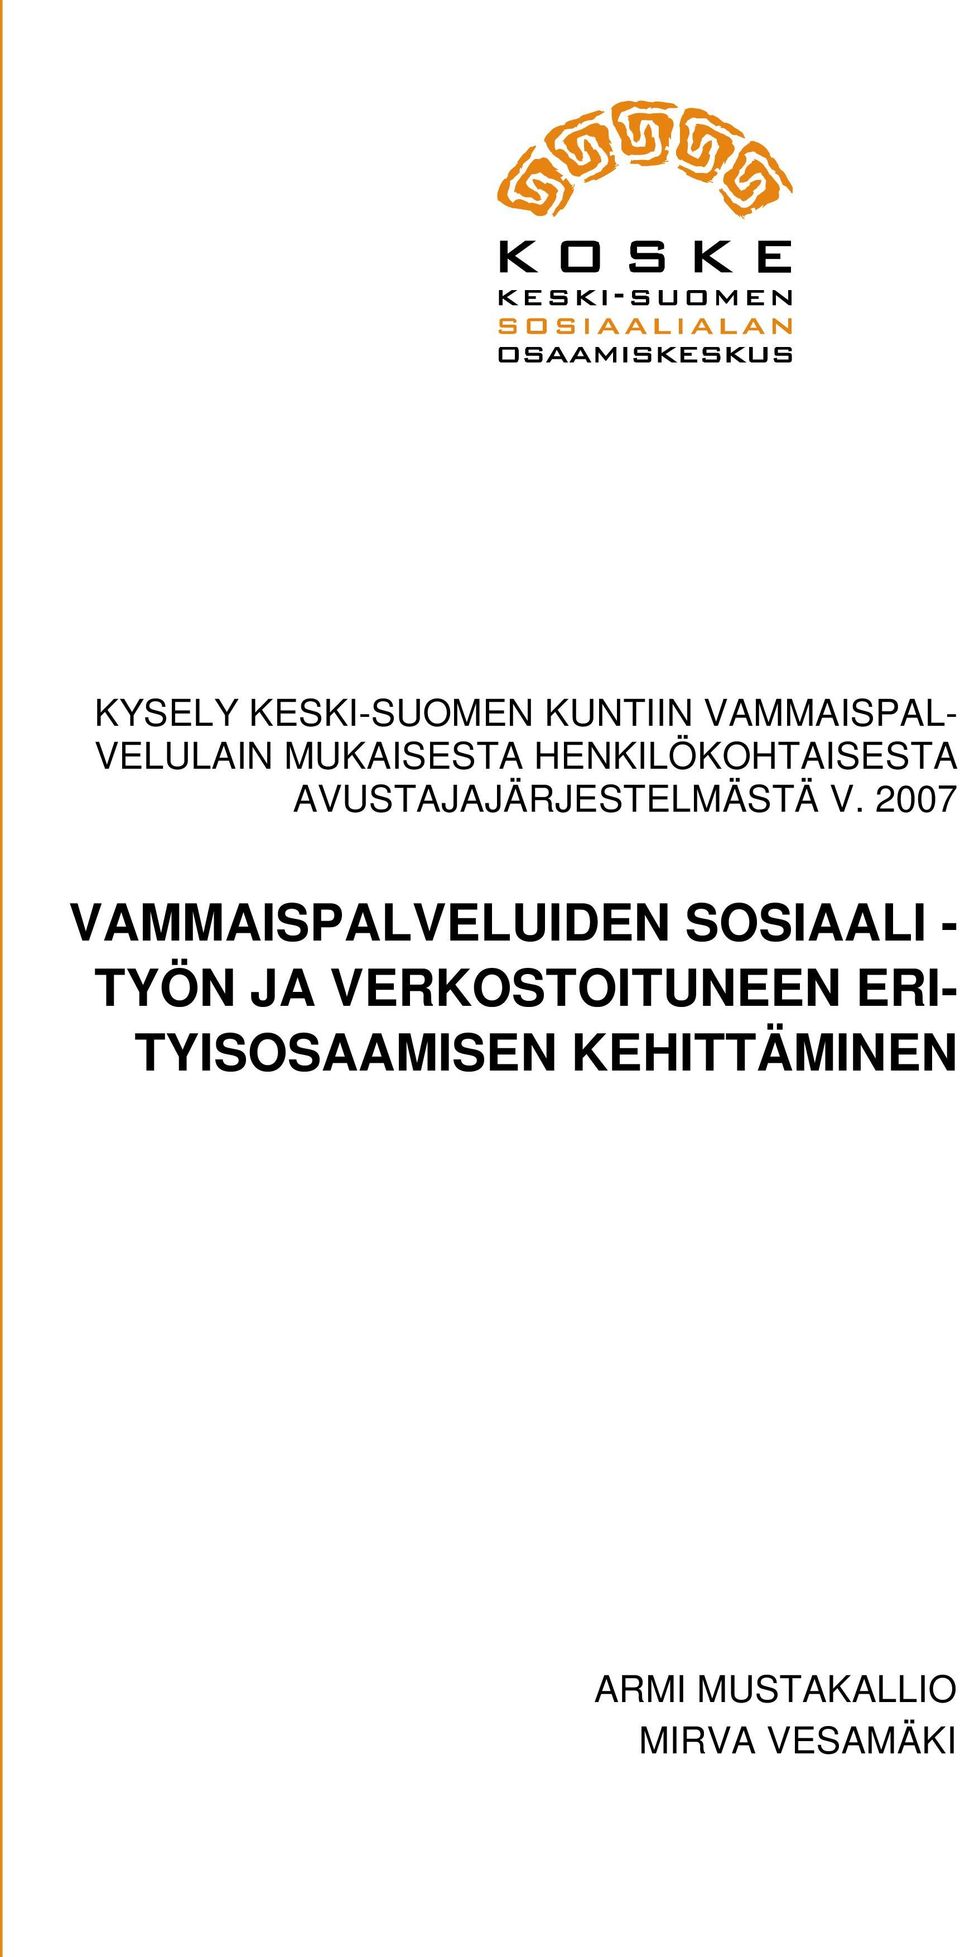 2007 VAMMAISPALVELUIDEN SOSIAALI - TYÖN JA